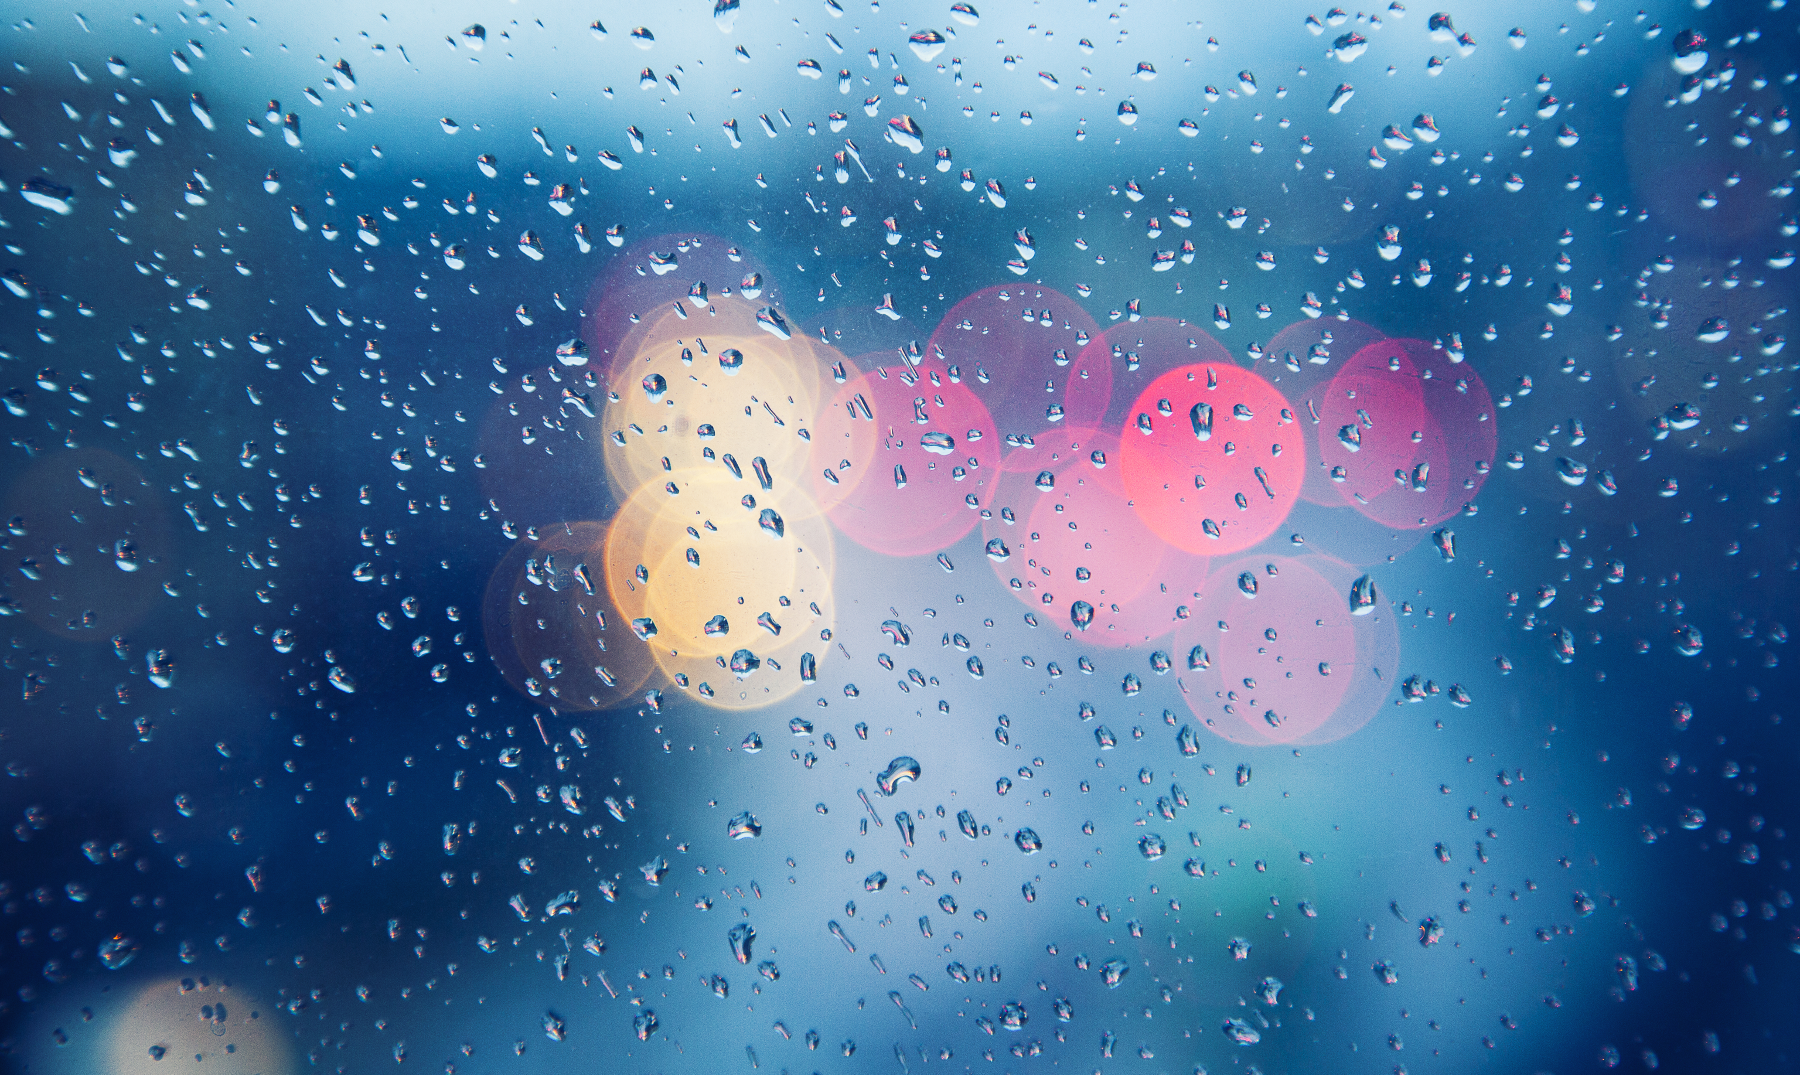 100 Frases para días de lluvia | Tiempo de rayos y truenos [con imágenes]